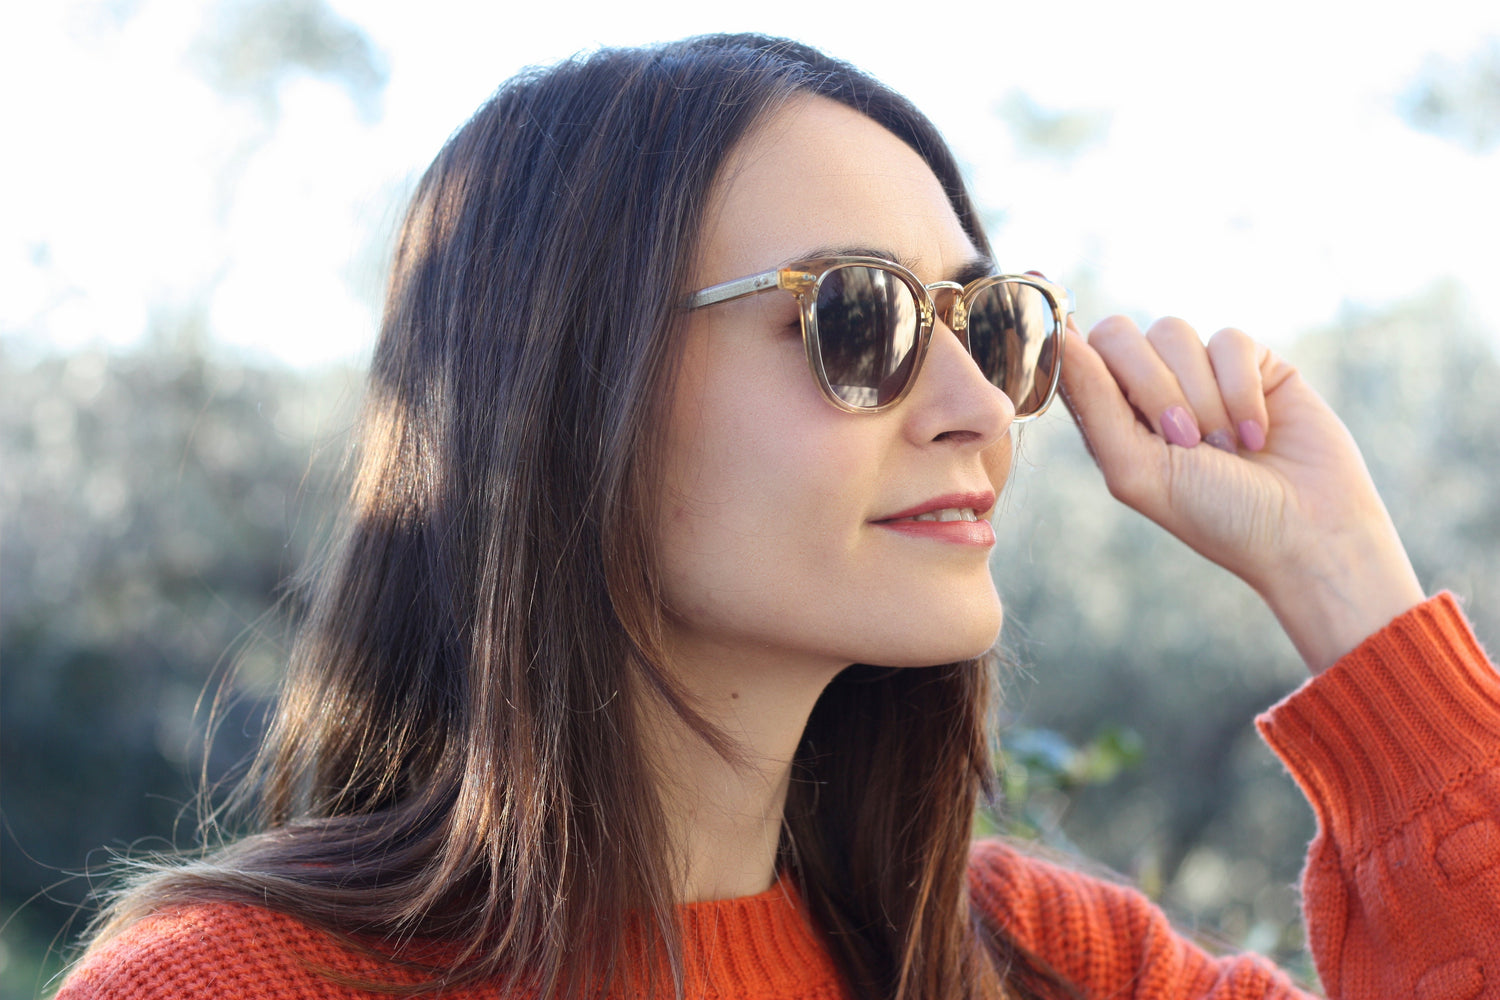 Do Anti-Fog Glasses Really Work? | KOALAEYE OPTICAL